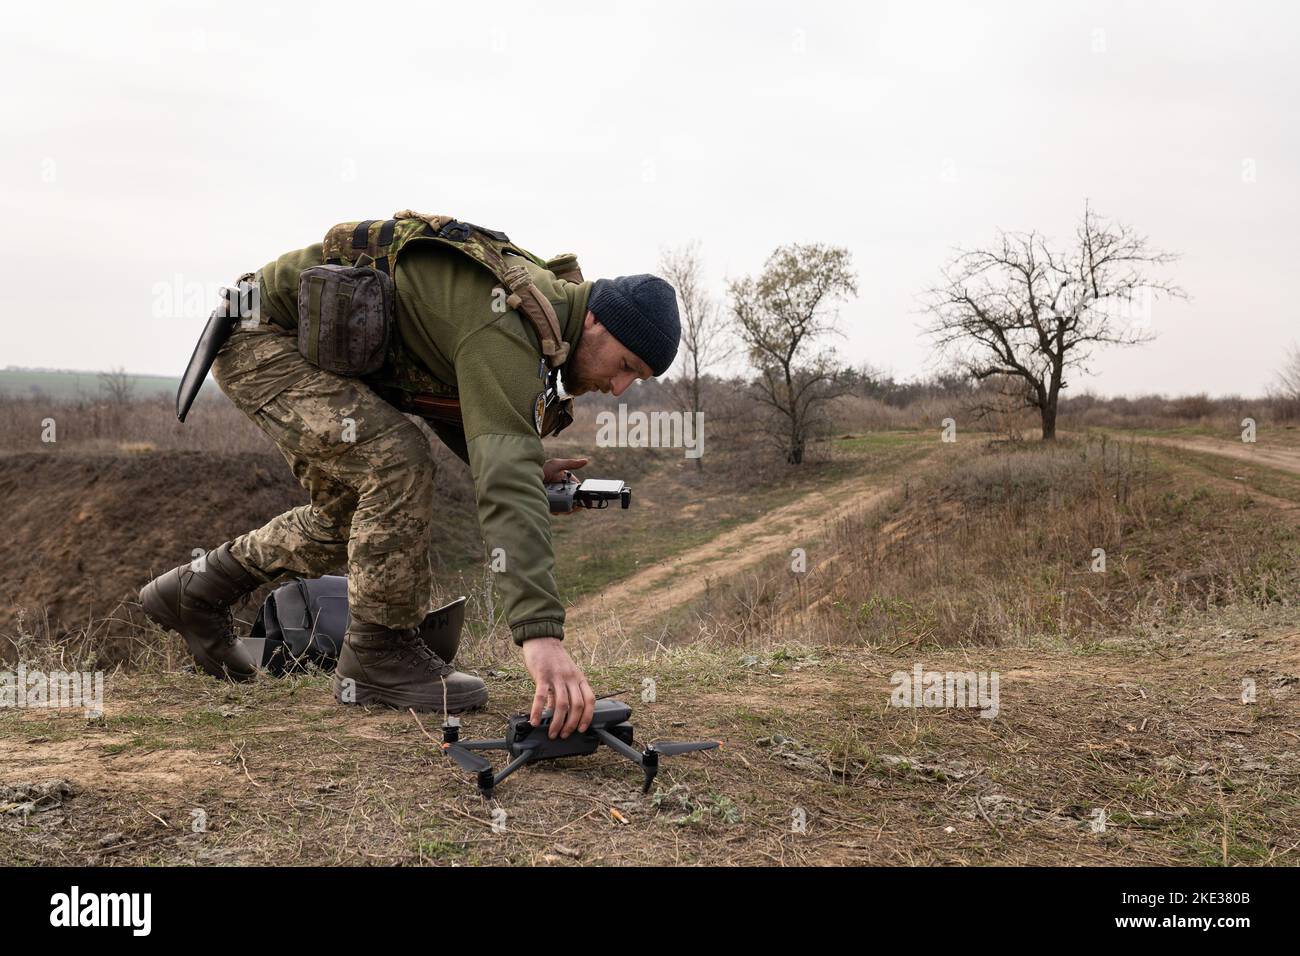 Ein ukrainischer Soldat der Brigade von 63 wurde gesehen, wie er eine Drohne am Boden platzierte, als Teil einer militärischen Ausbildung, die einen Angriff in den Schützengräben simulierte, um Kherson zu gewinnen. Das Training, an dem 31 Soldaten beteiligt sind, zielt darauf ab, die Kampfkünste auf dem Schlachtfeld zu verbessern. Das russische Militär wurde angewiesen, sich aus der südukrainischen Stadt Cherson zurückzuziehen und sich vollständig vom westlichen Ufer des Dnipro-Flusses zurückzuziehen. Es ist von Bedeutung, da die regionale Hauptstadt seit der Invasion im Februar erobert wurde. (Foto von Ashley Chan/SOPA Images/Sipa USA) Stockfoto